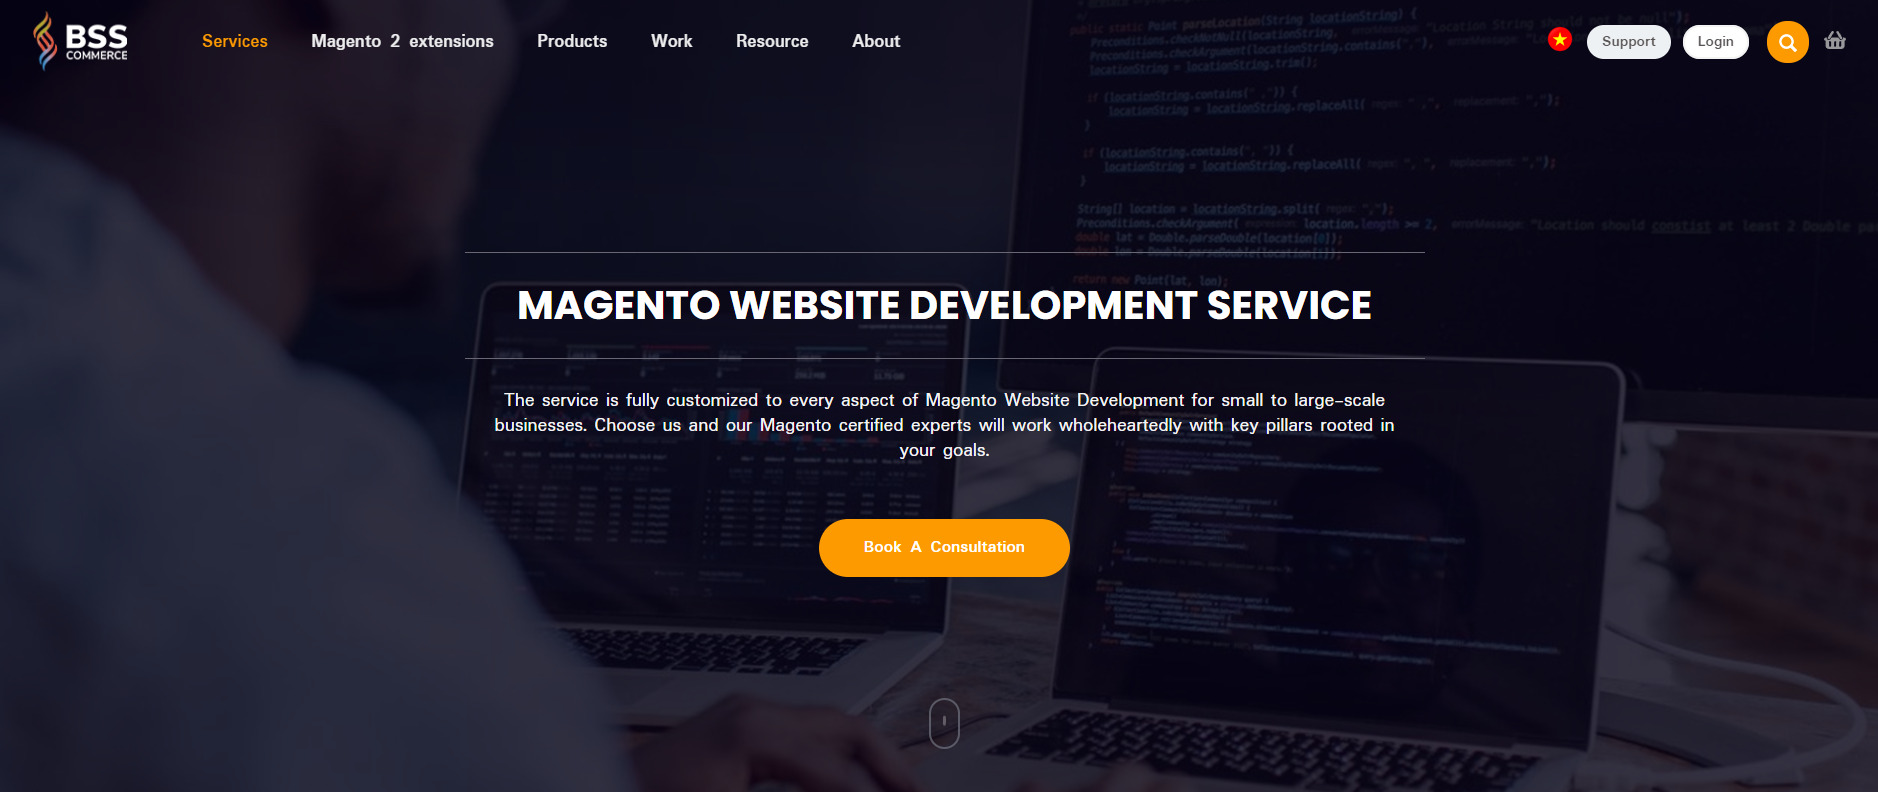 bss-magento-website-development-service